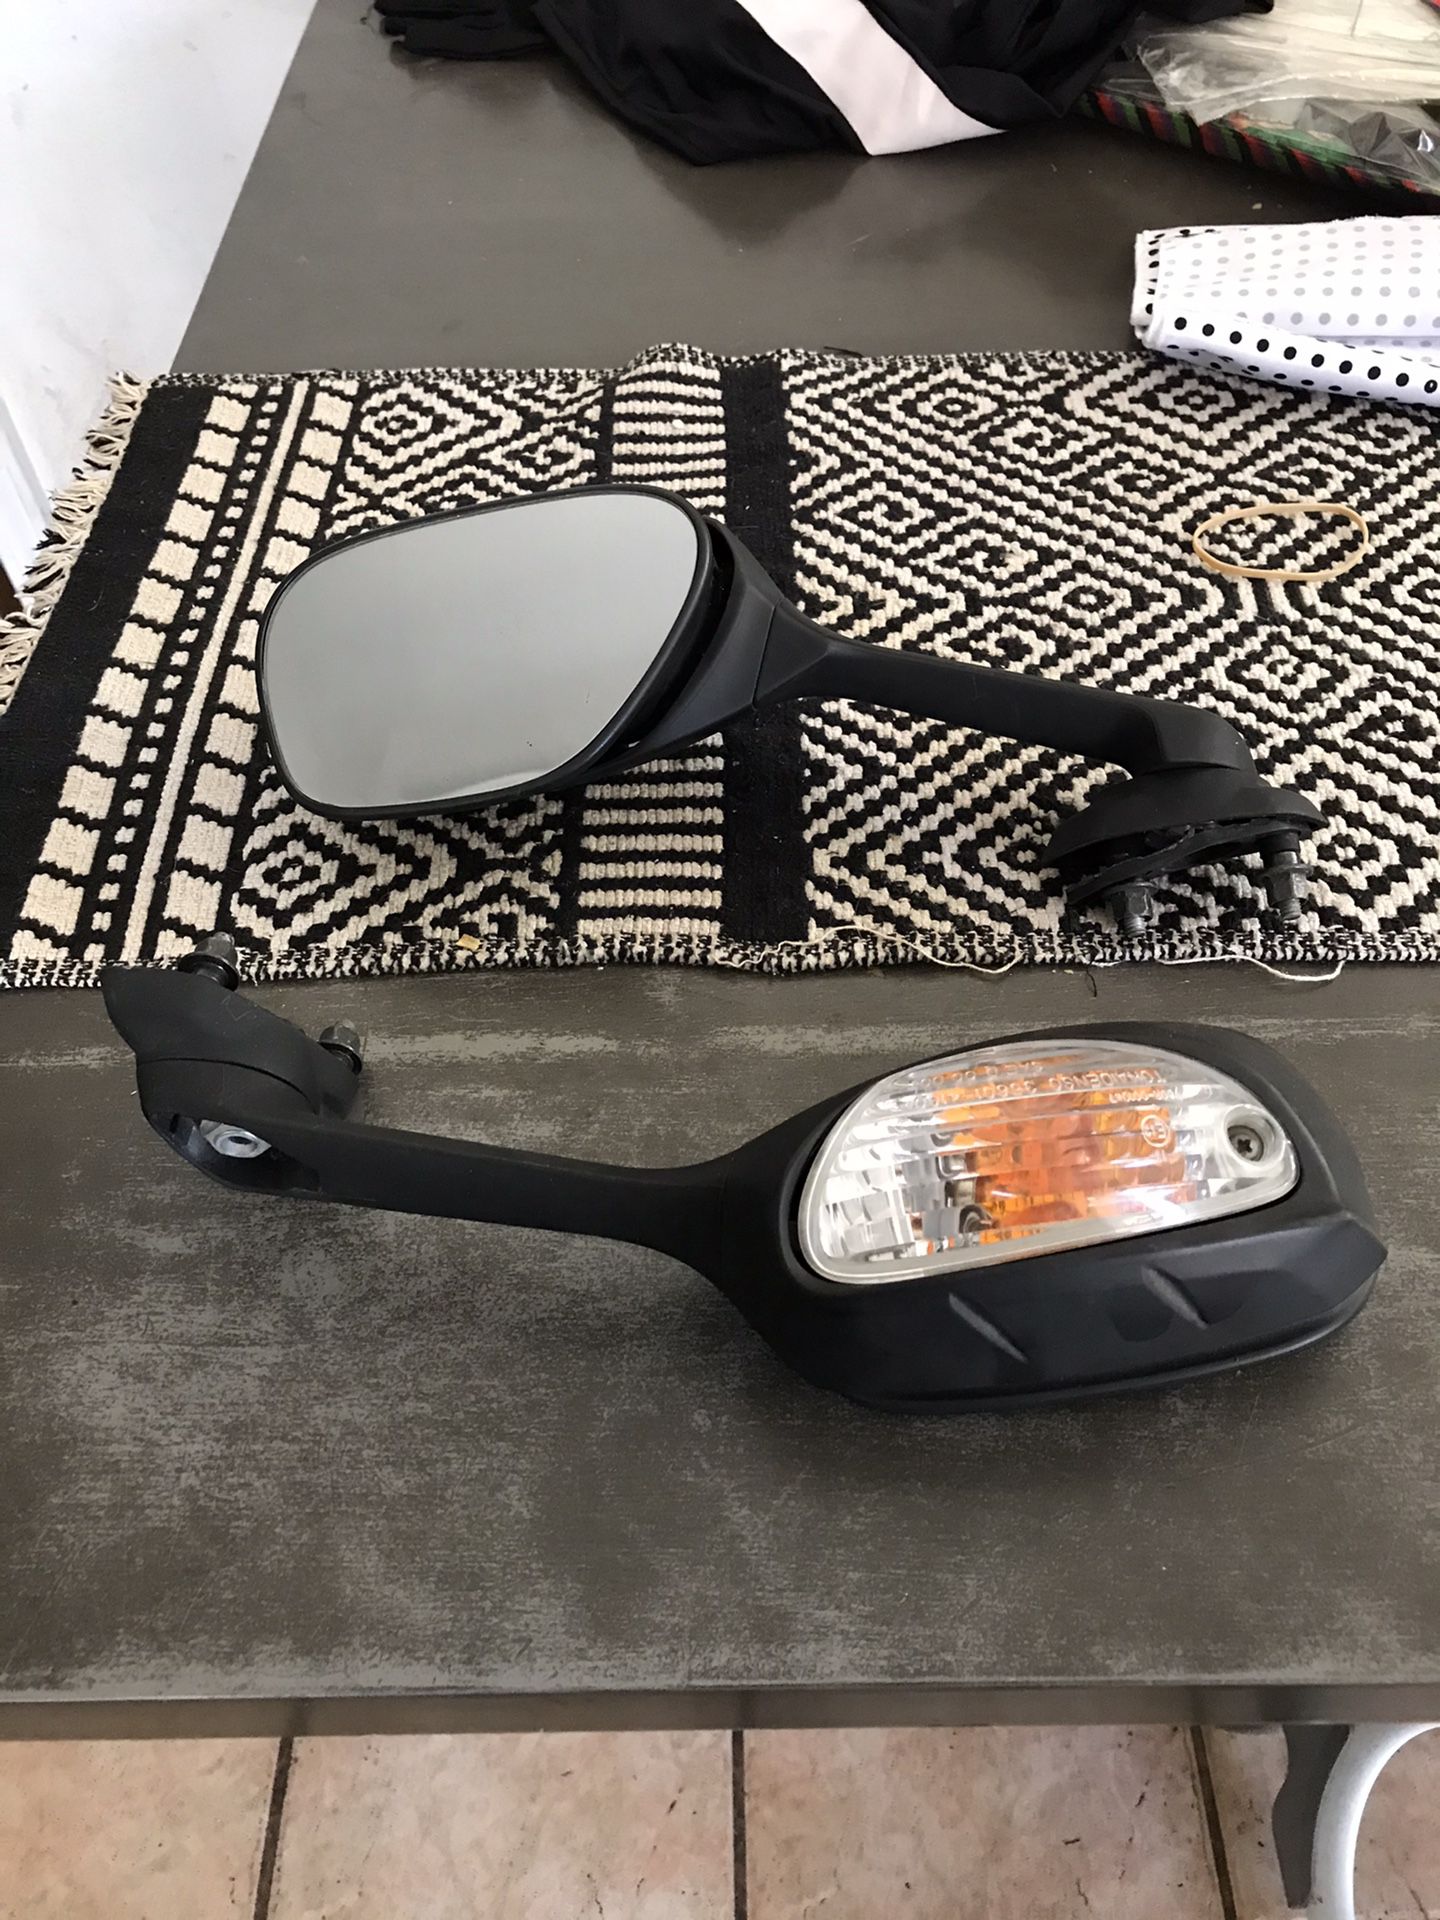 Suzuki gsxr OEM rearview mirror with signal light